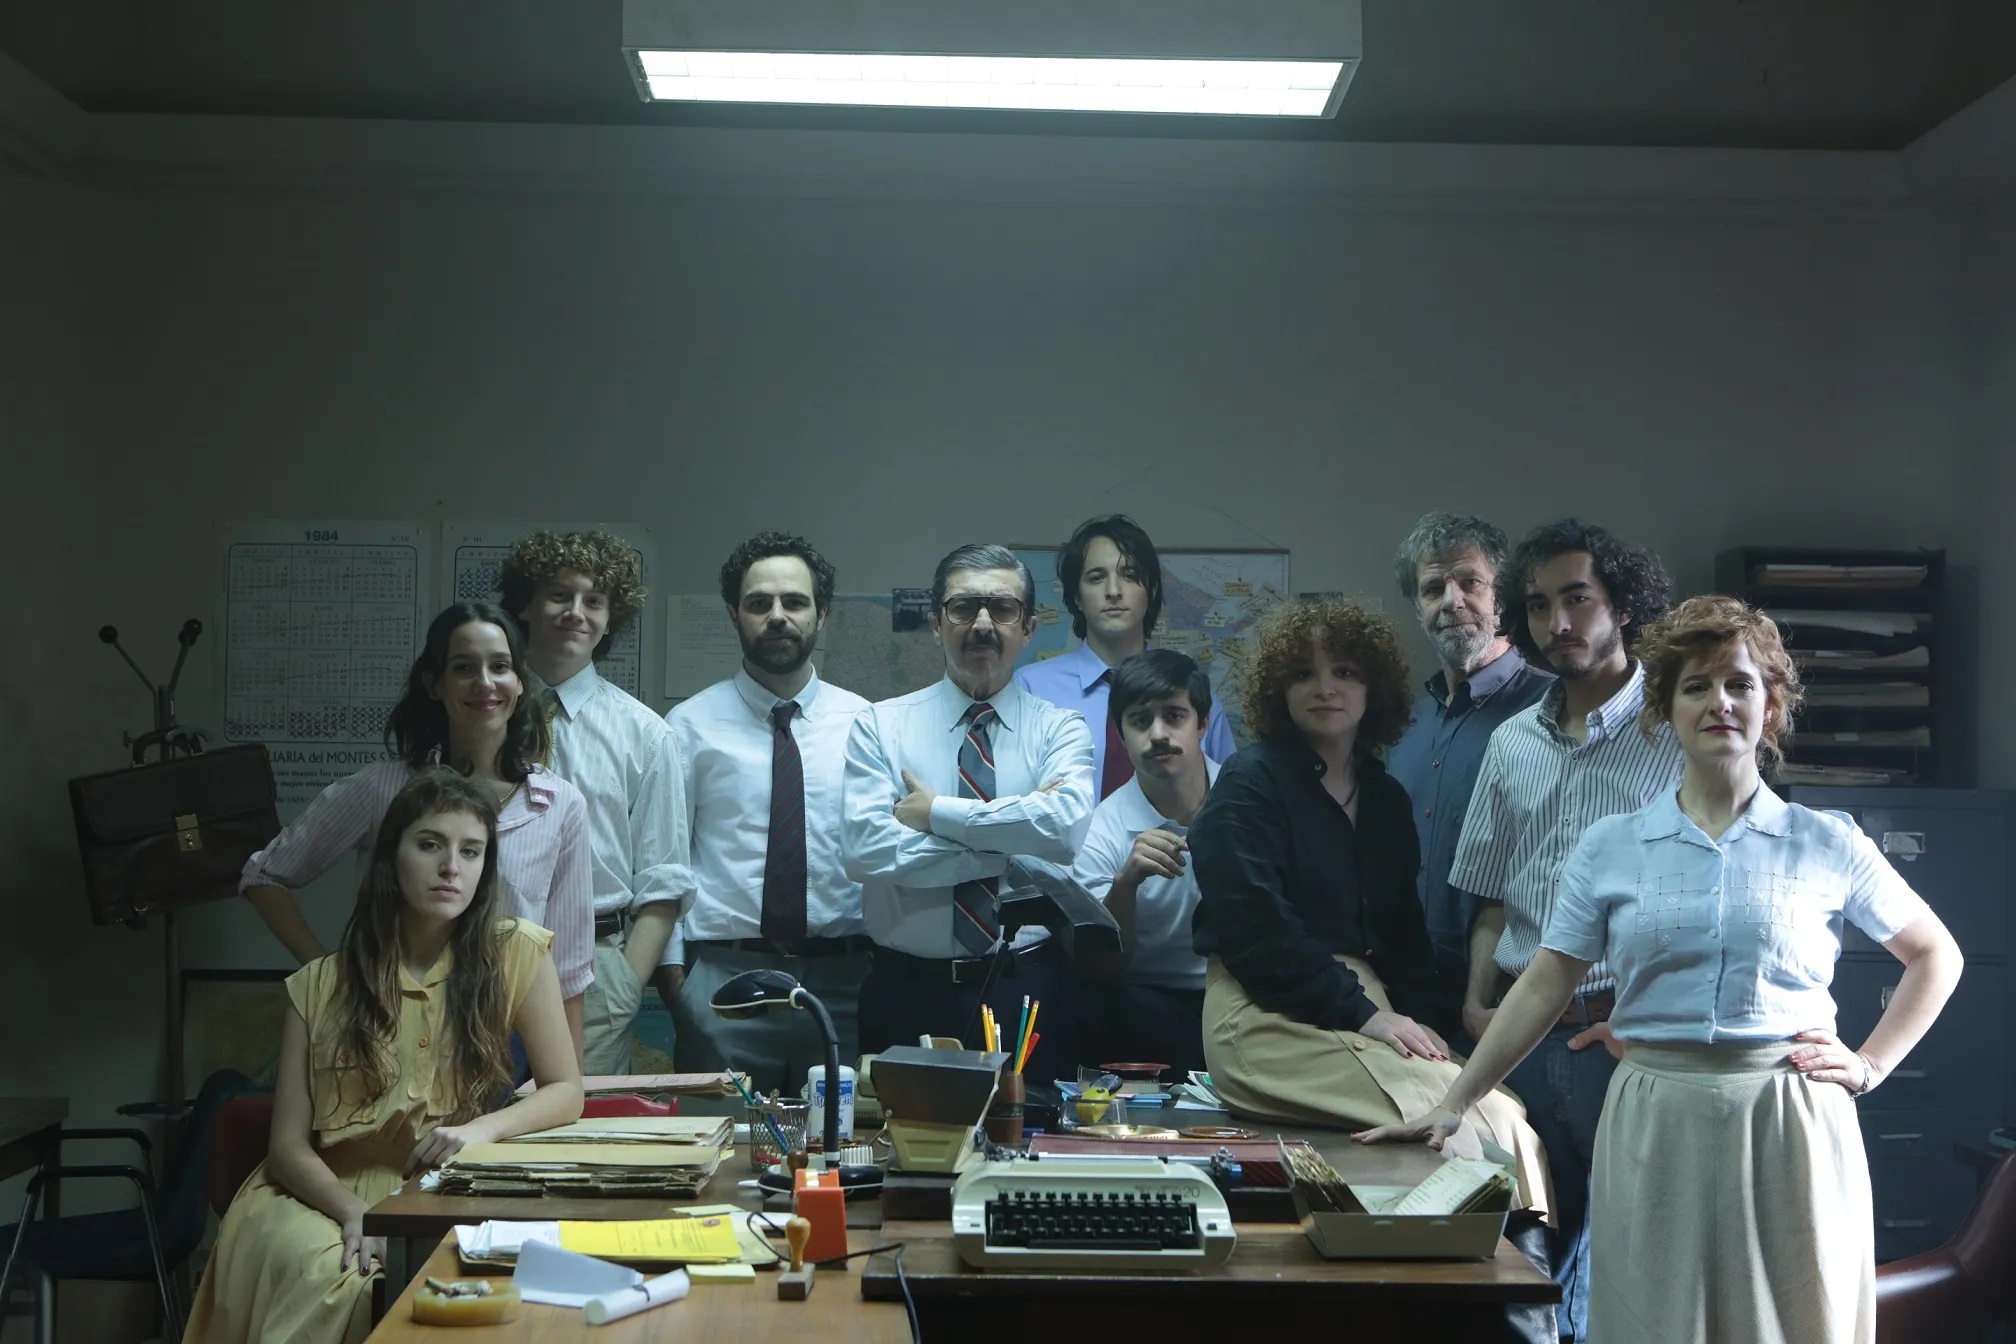 Imagem retangular horizontal do filme Argentina, 1985. A imagem mostra um grupo de pessoas posicionado ao redor de uma mesa em um escritório. São onze pessoas, todas latinas, quatro delas são mulheres, apenas três são mais velhos.